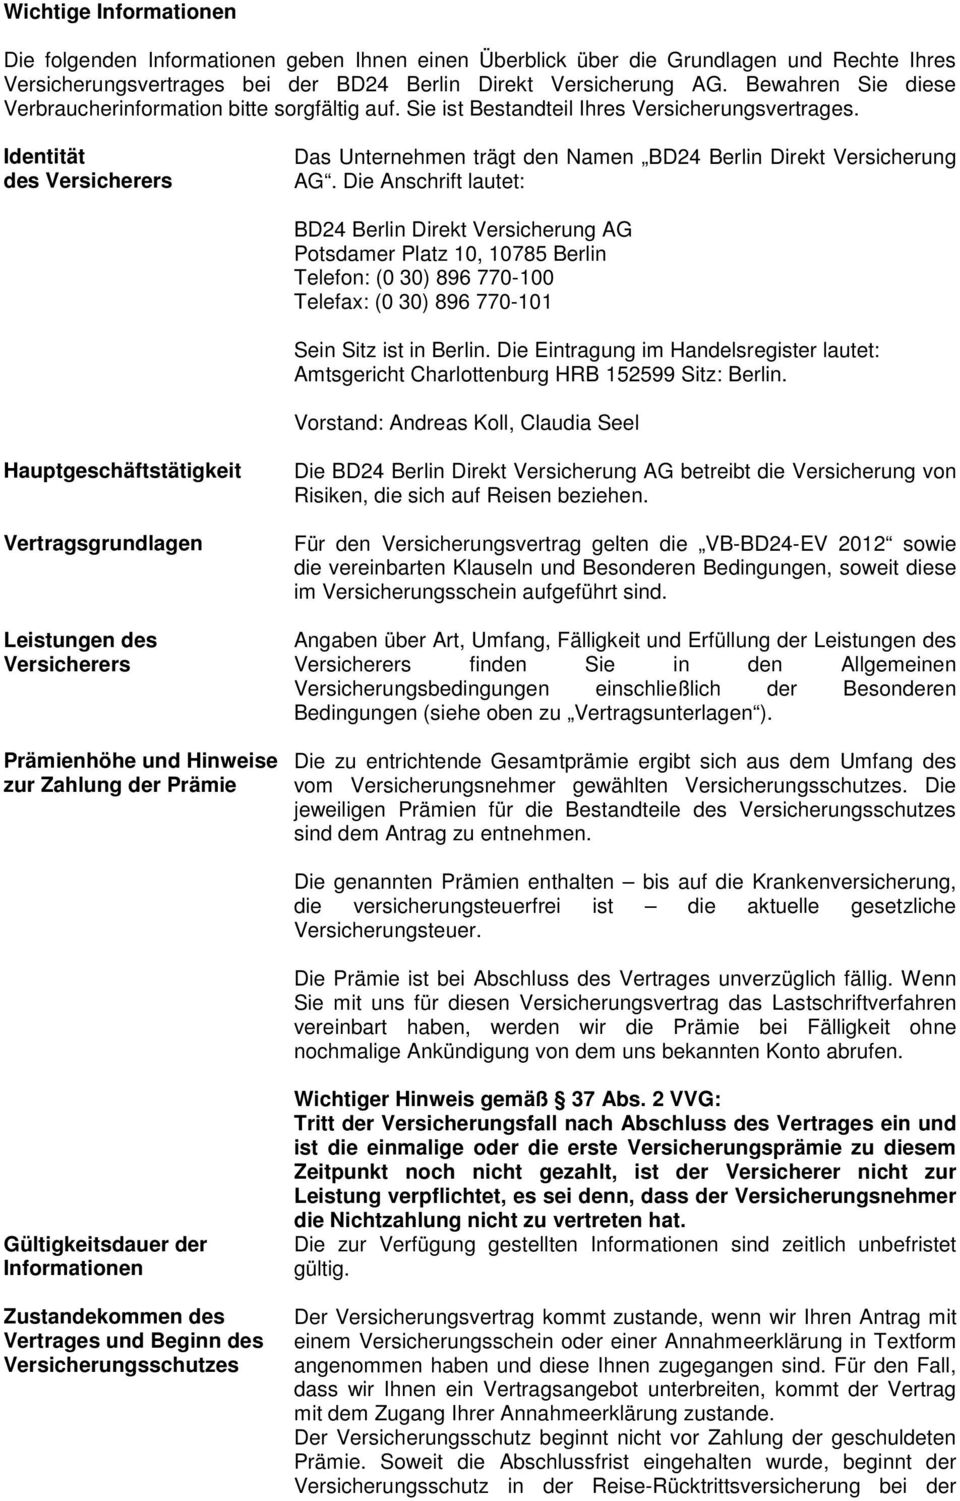 Identität des Versicherers Das Unternehmen trägt den Namen BD24 Berlin Direkt Versicherung AG.